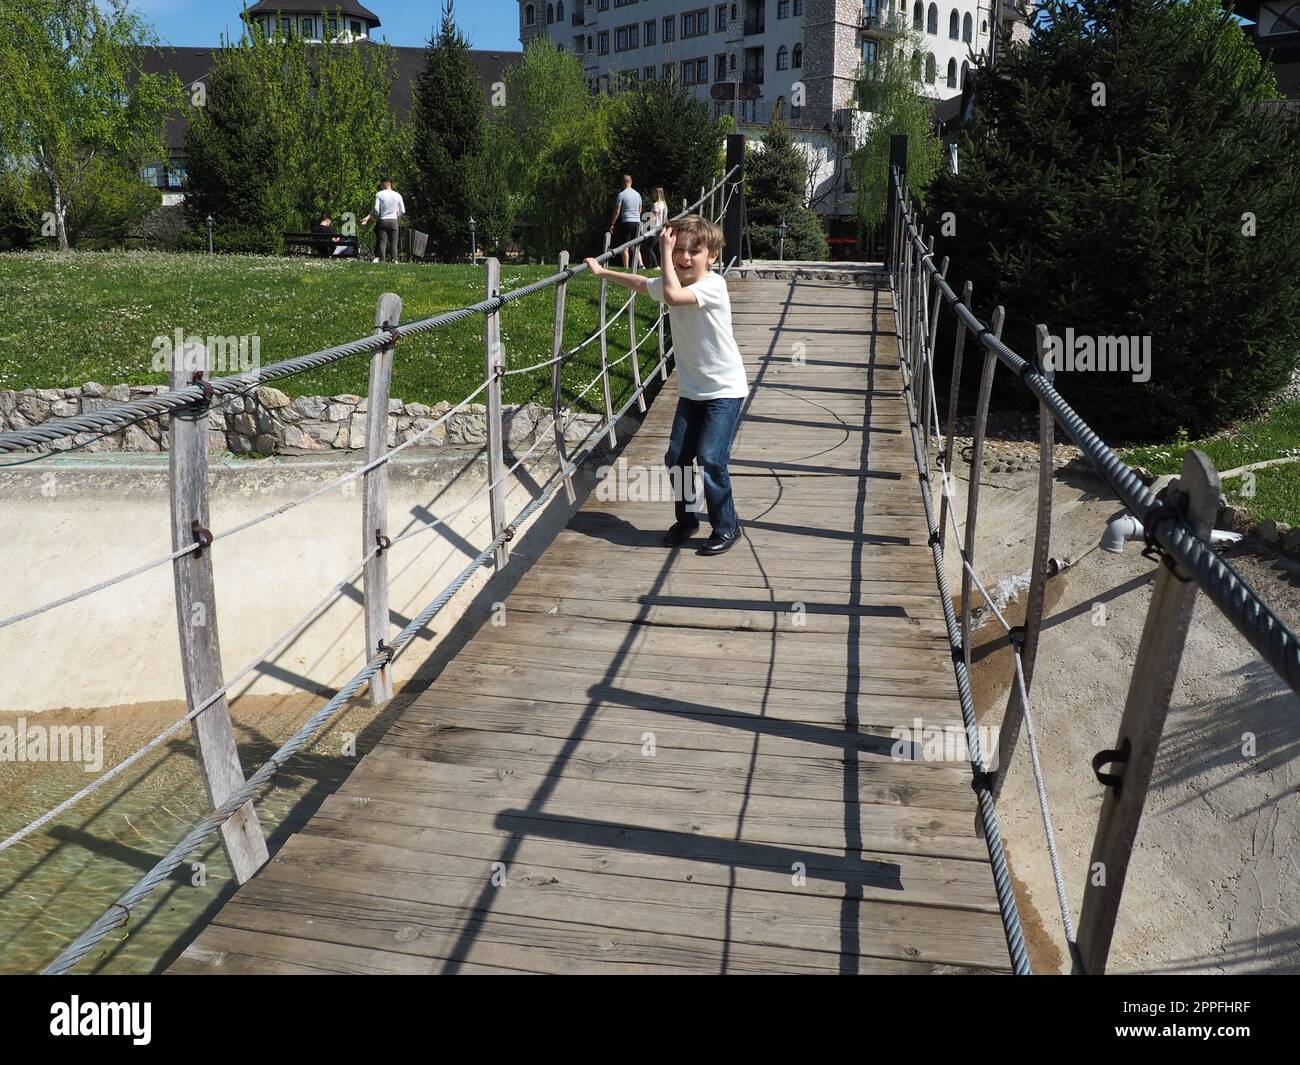 Hängende Holzbrücke. Der Junge versucht, die Brücke zu rocken. Stanisici, Bijelina, Bosnien und Herzegowina. Eine Brücke aus Brettern und Geländern, die von 4 Personen getragen werden kann. Stockfoto